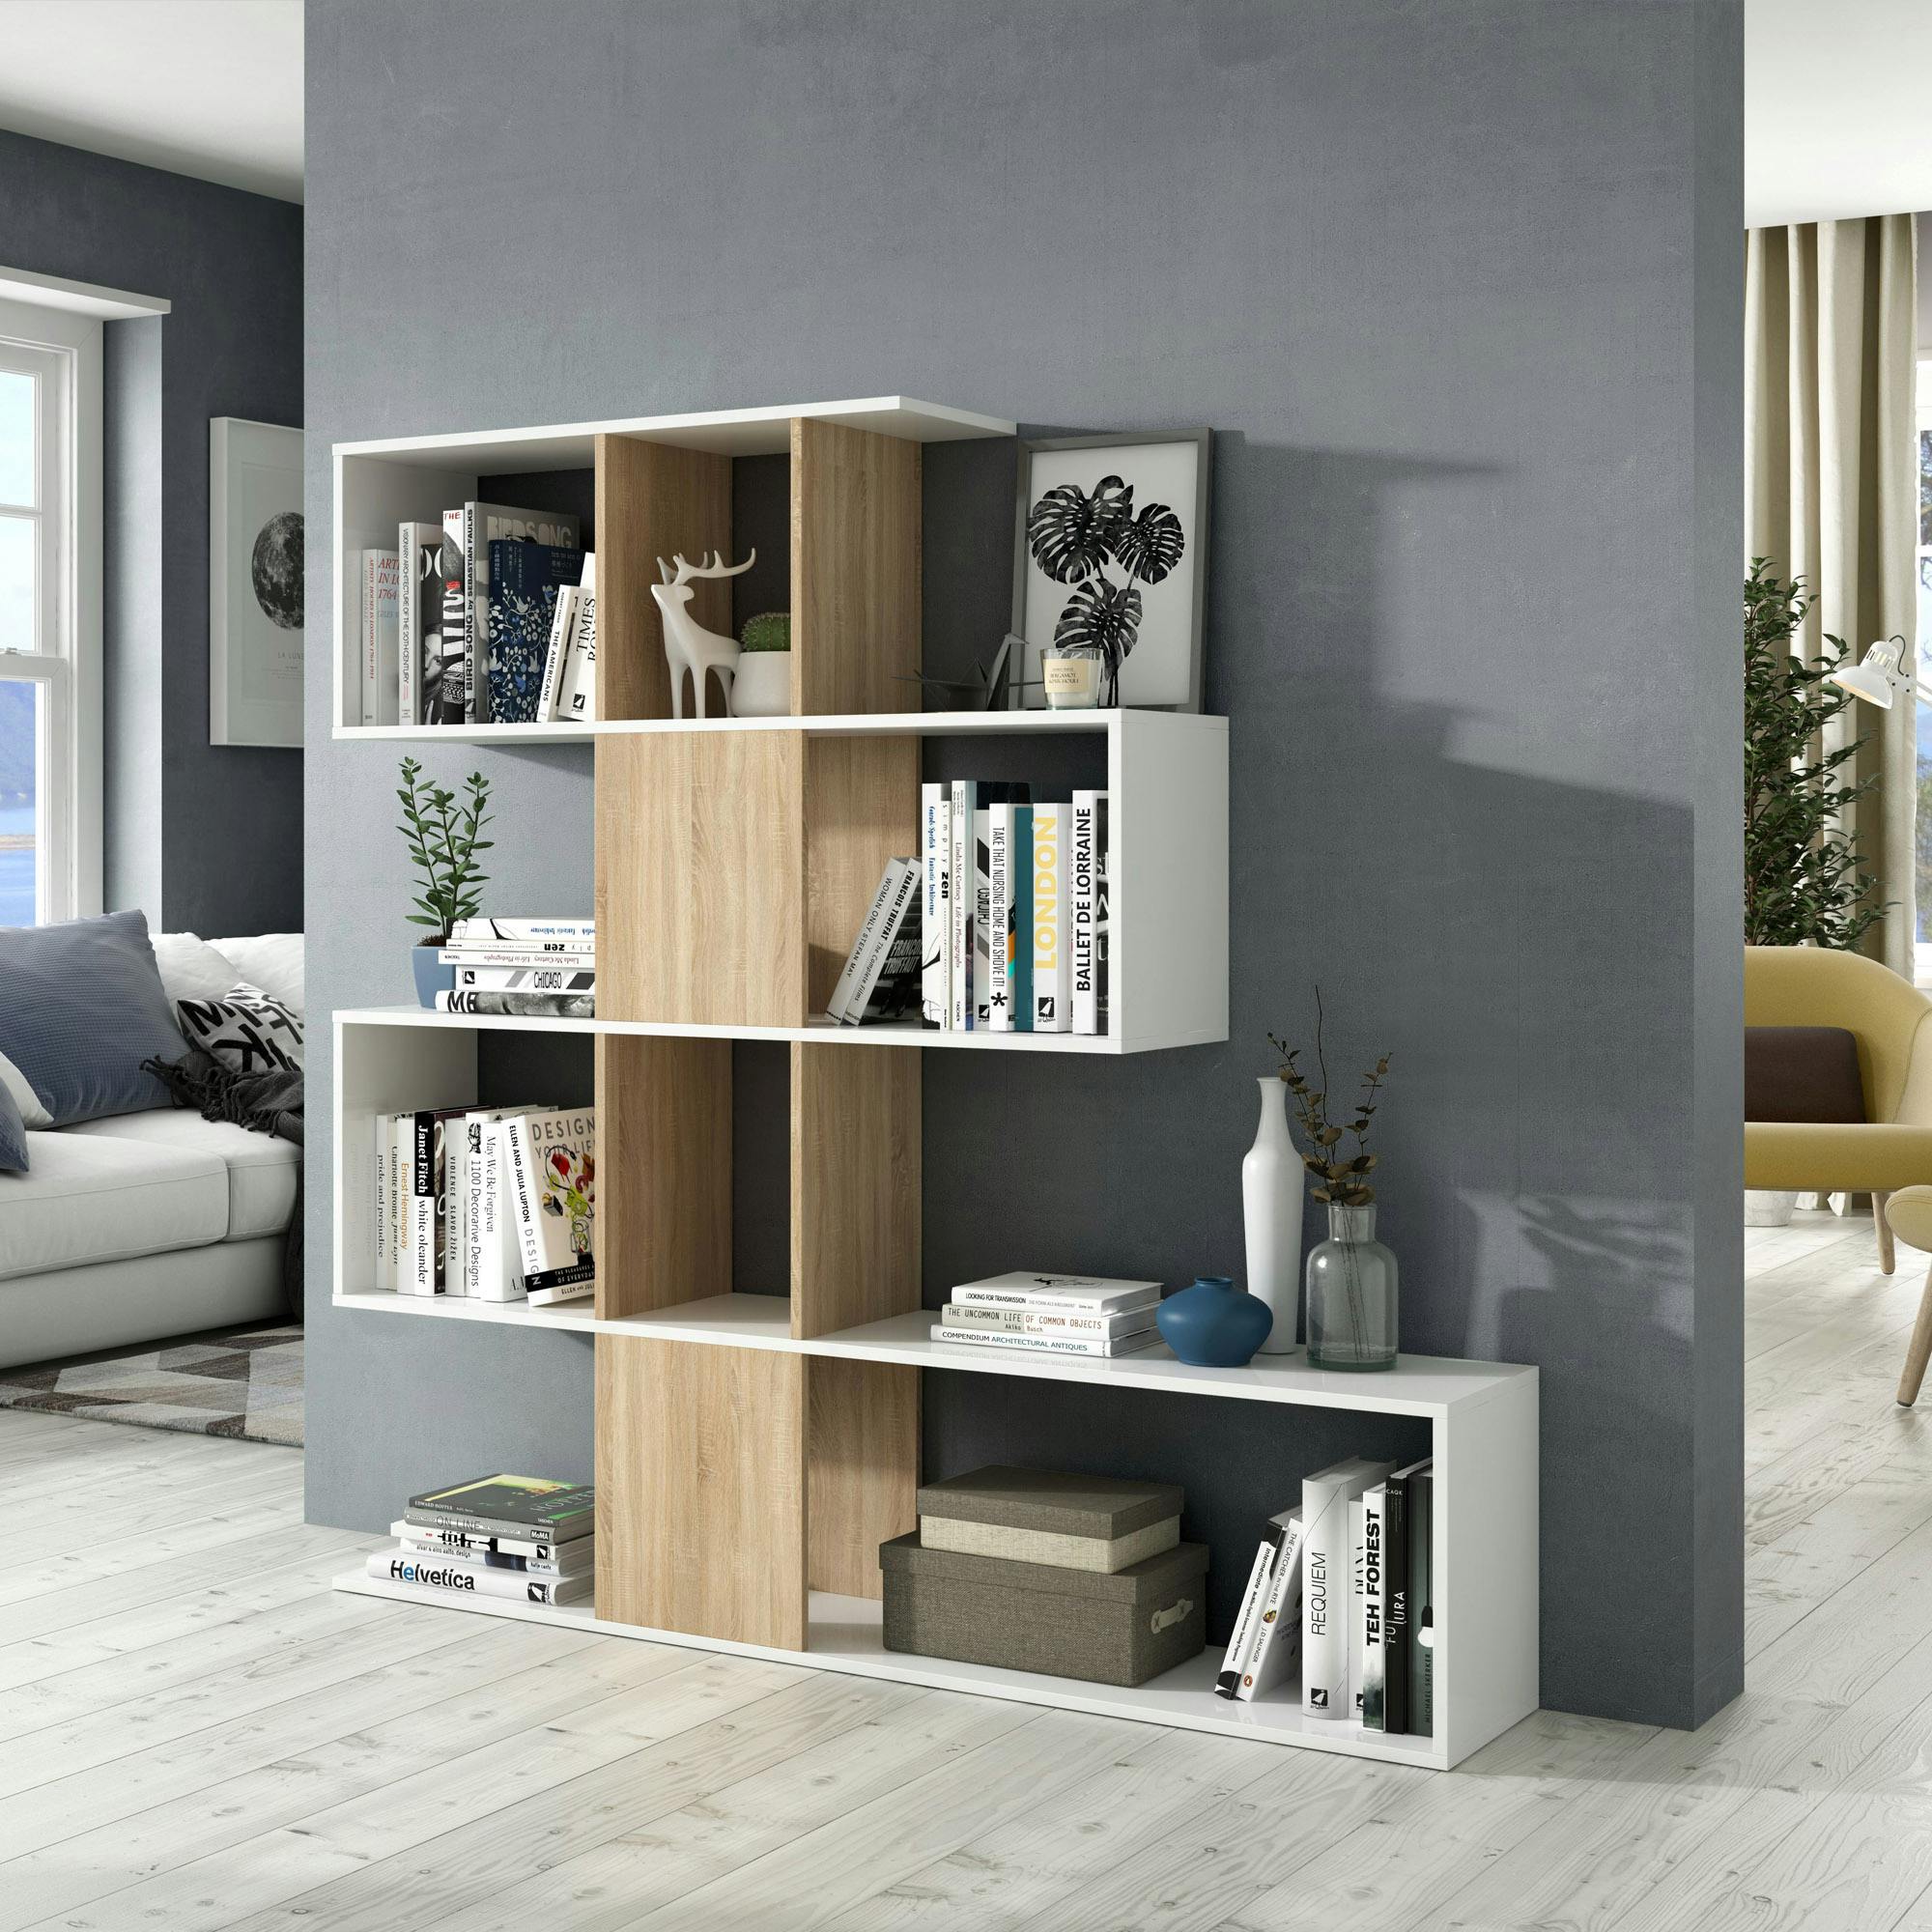 Librería estantería, 60x186x25cm, Blanco y negro